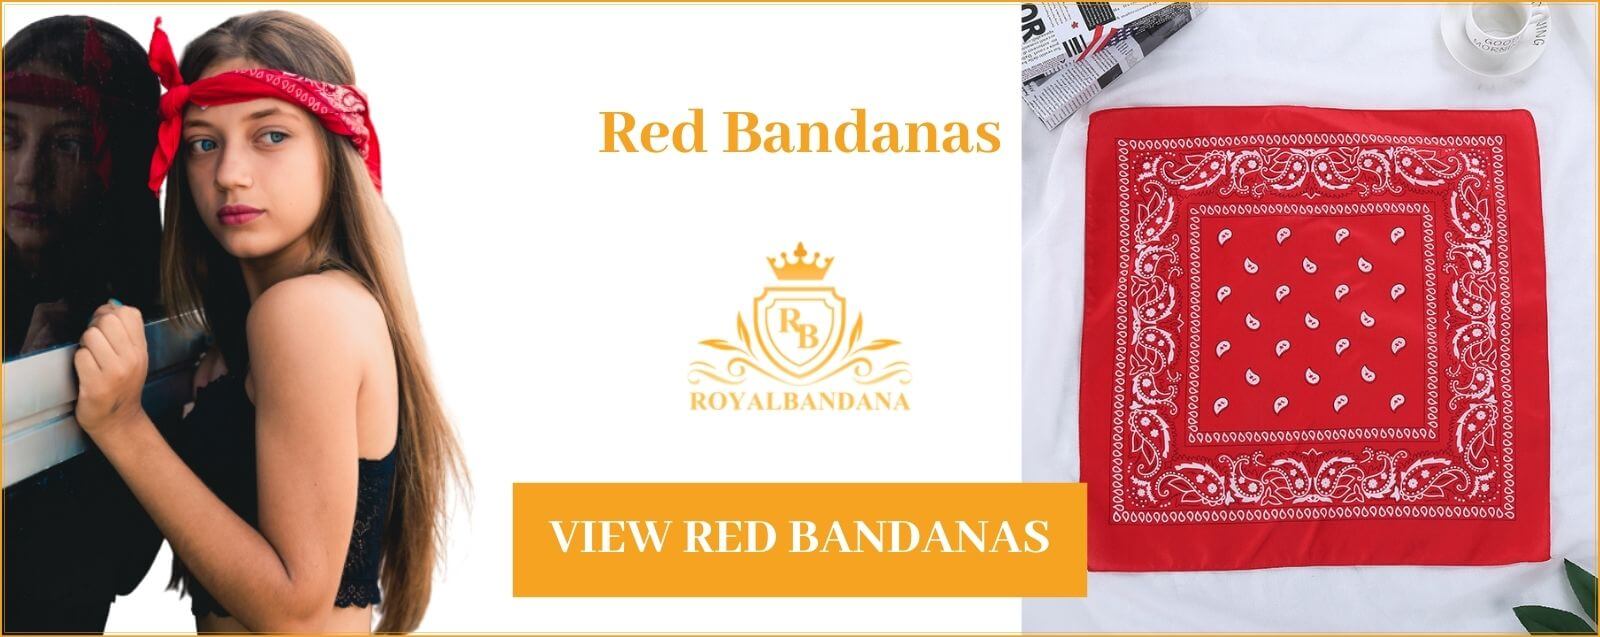 see-red-bandana-woman-royalbandana